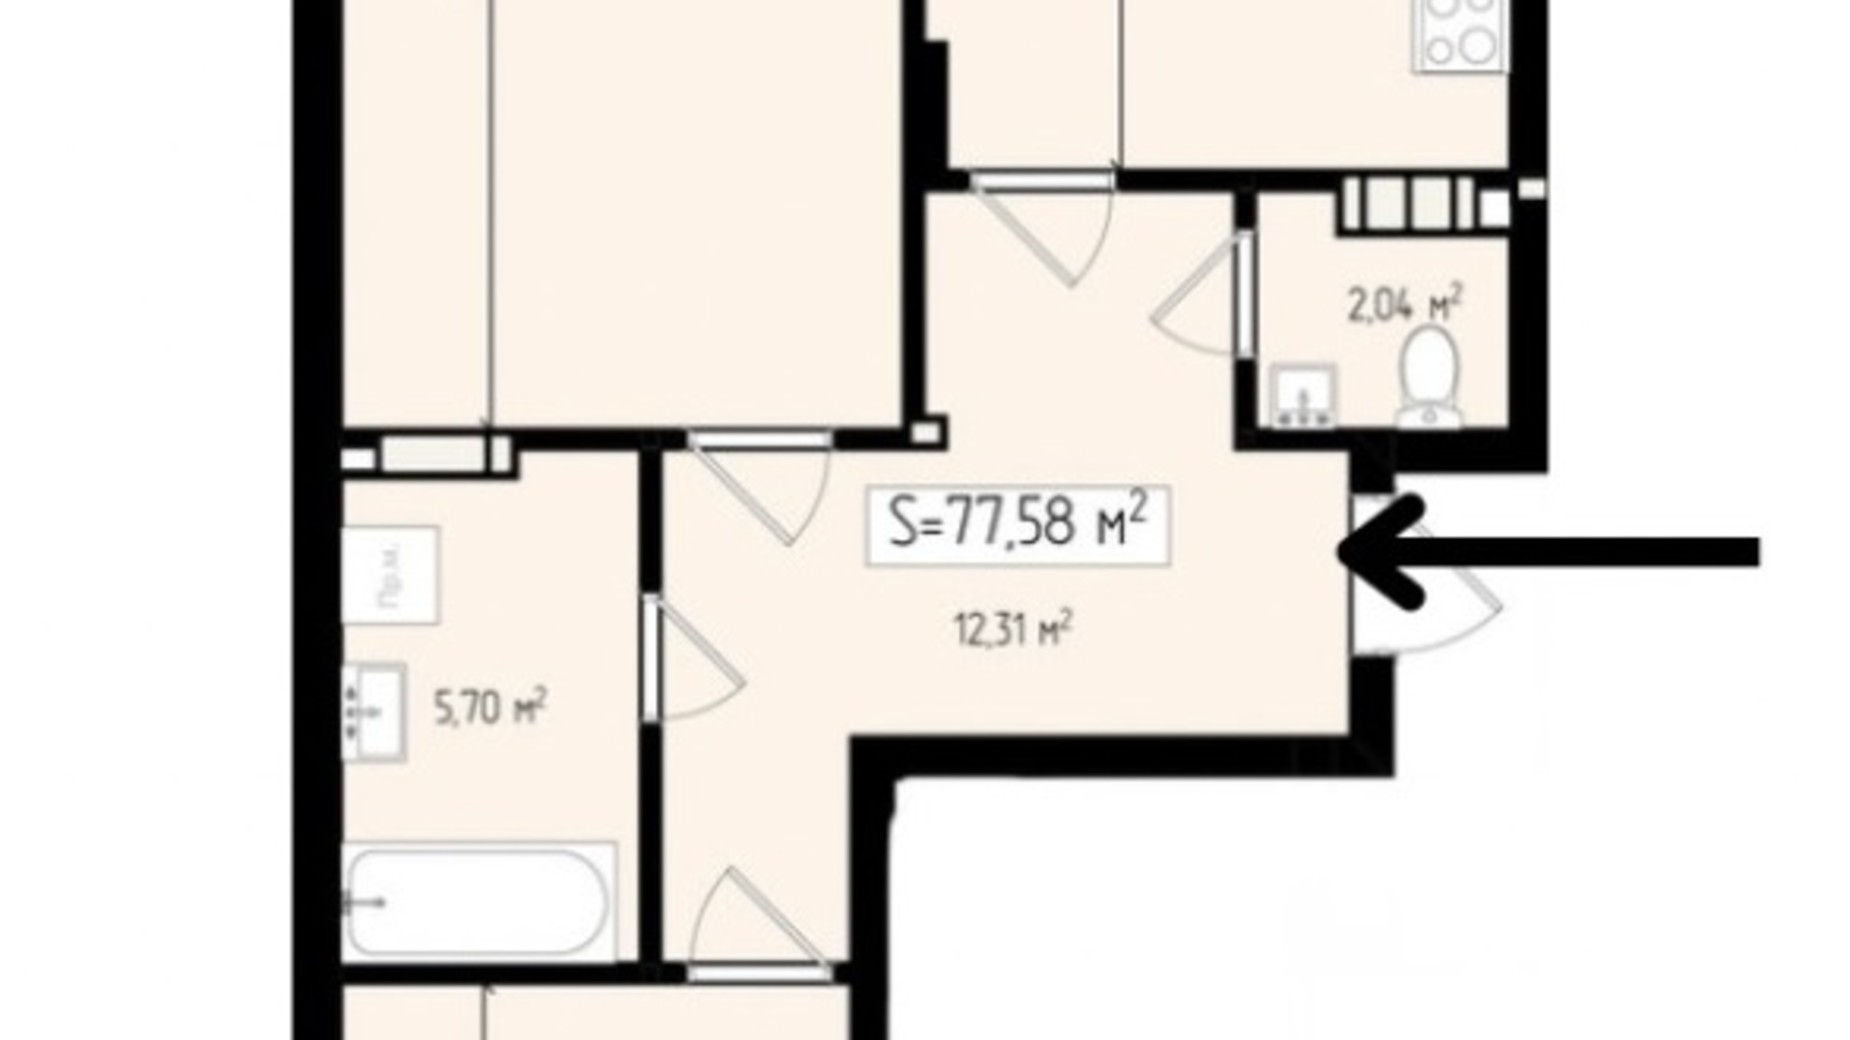 Планировка 2-комнатной квартиры в ЖК Mala Praha 77.58 м², фото 539589